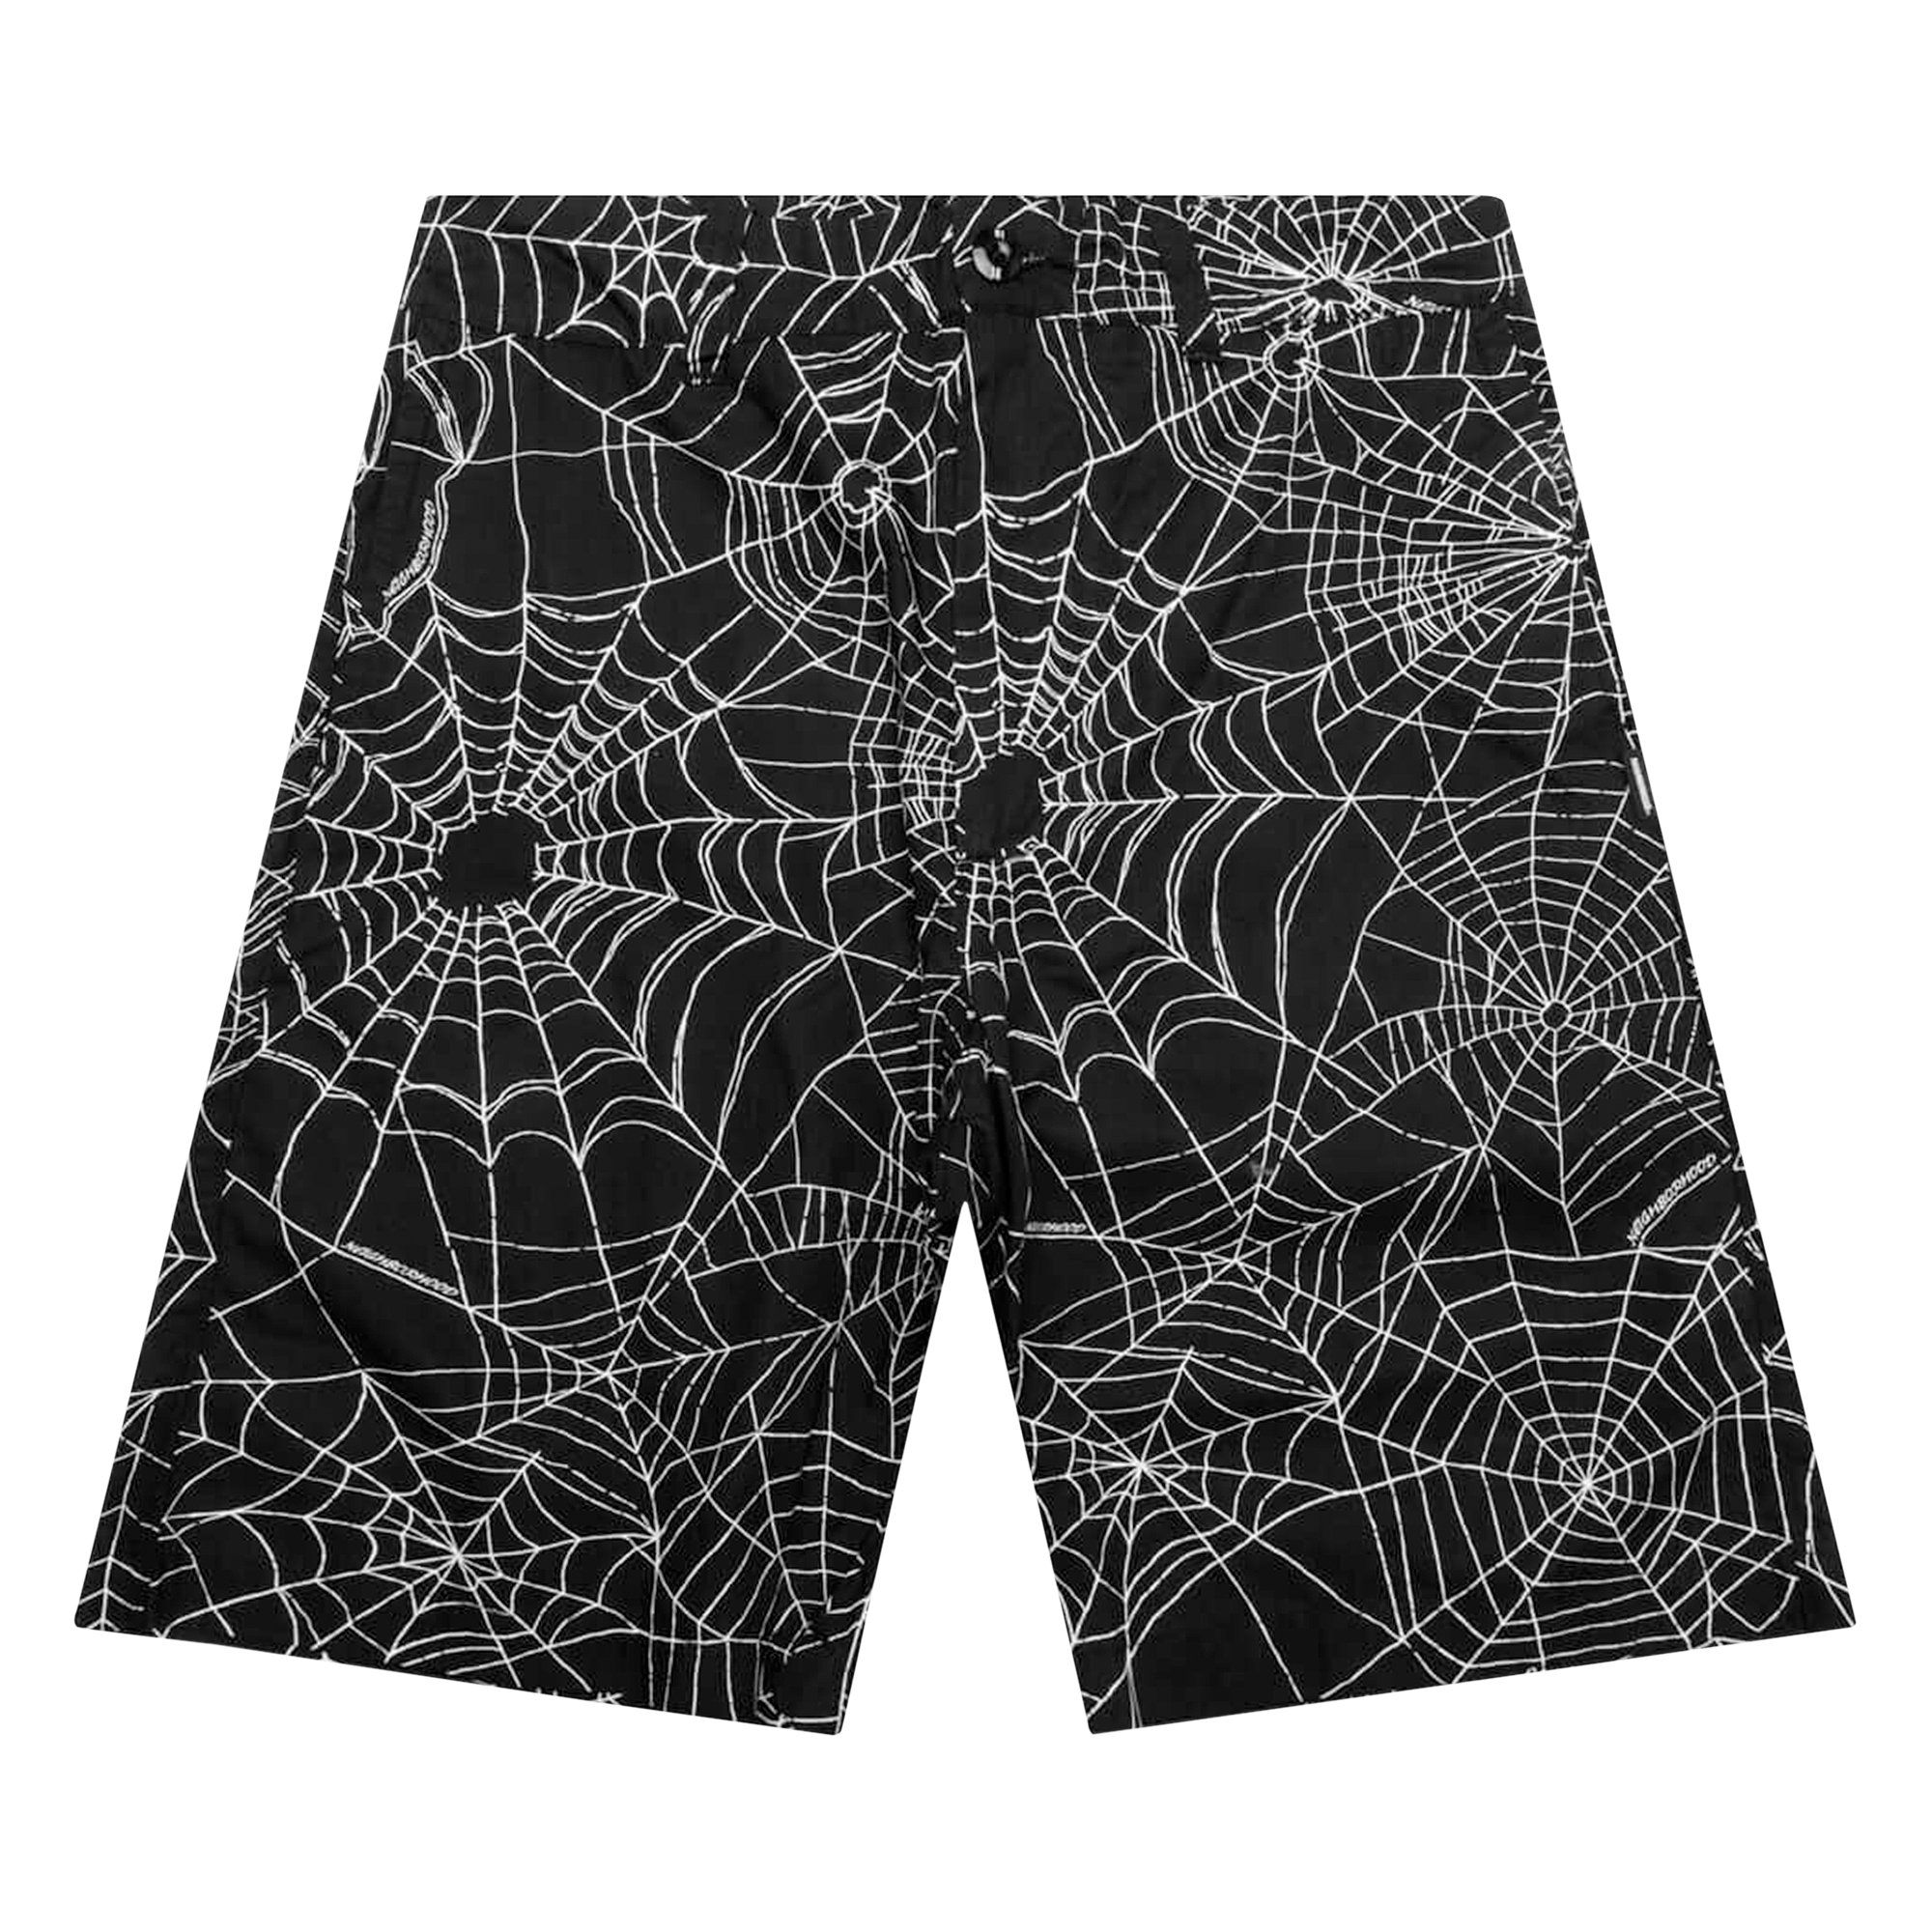 Spiderweb Flare Pants 